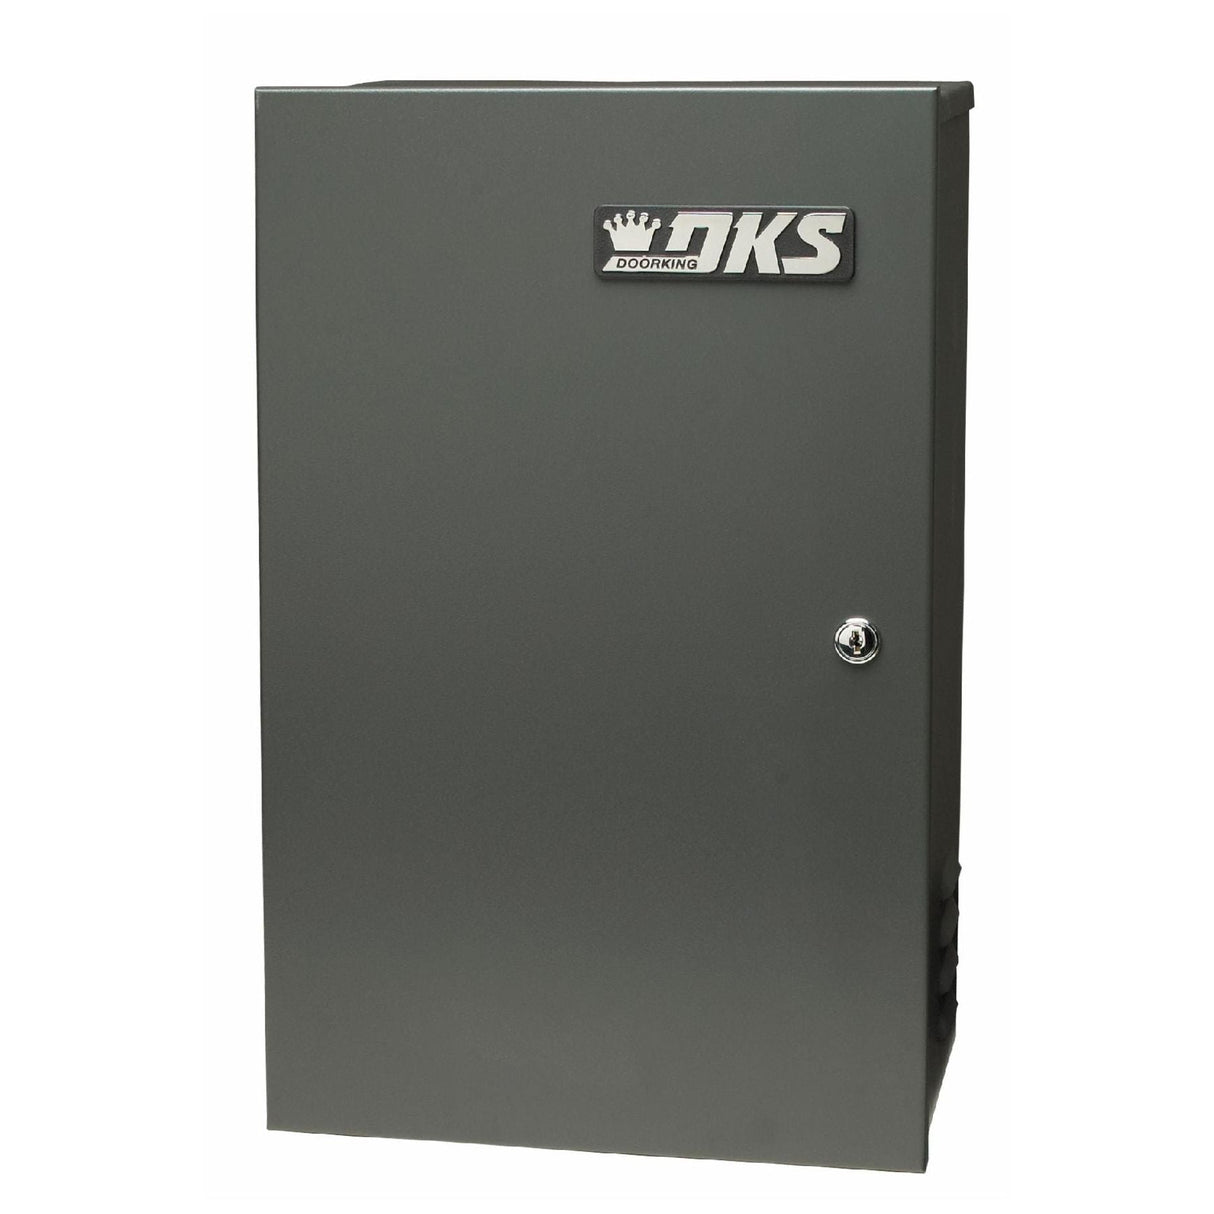 Doorking 4302-314 Solar Control Box (24V)